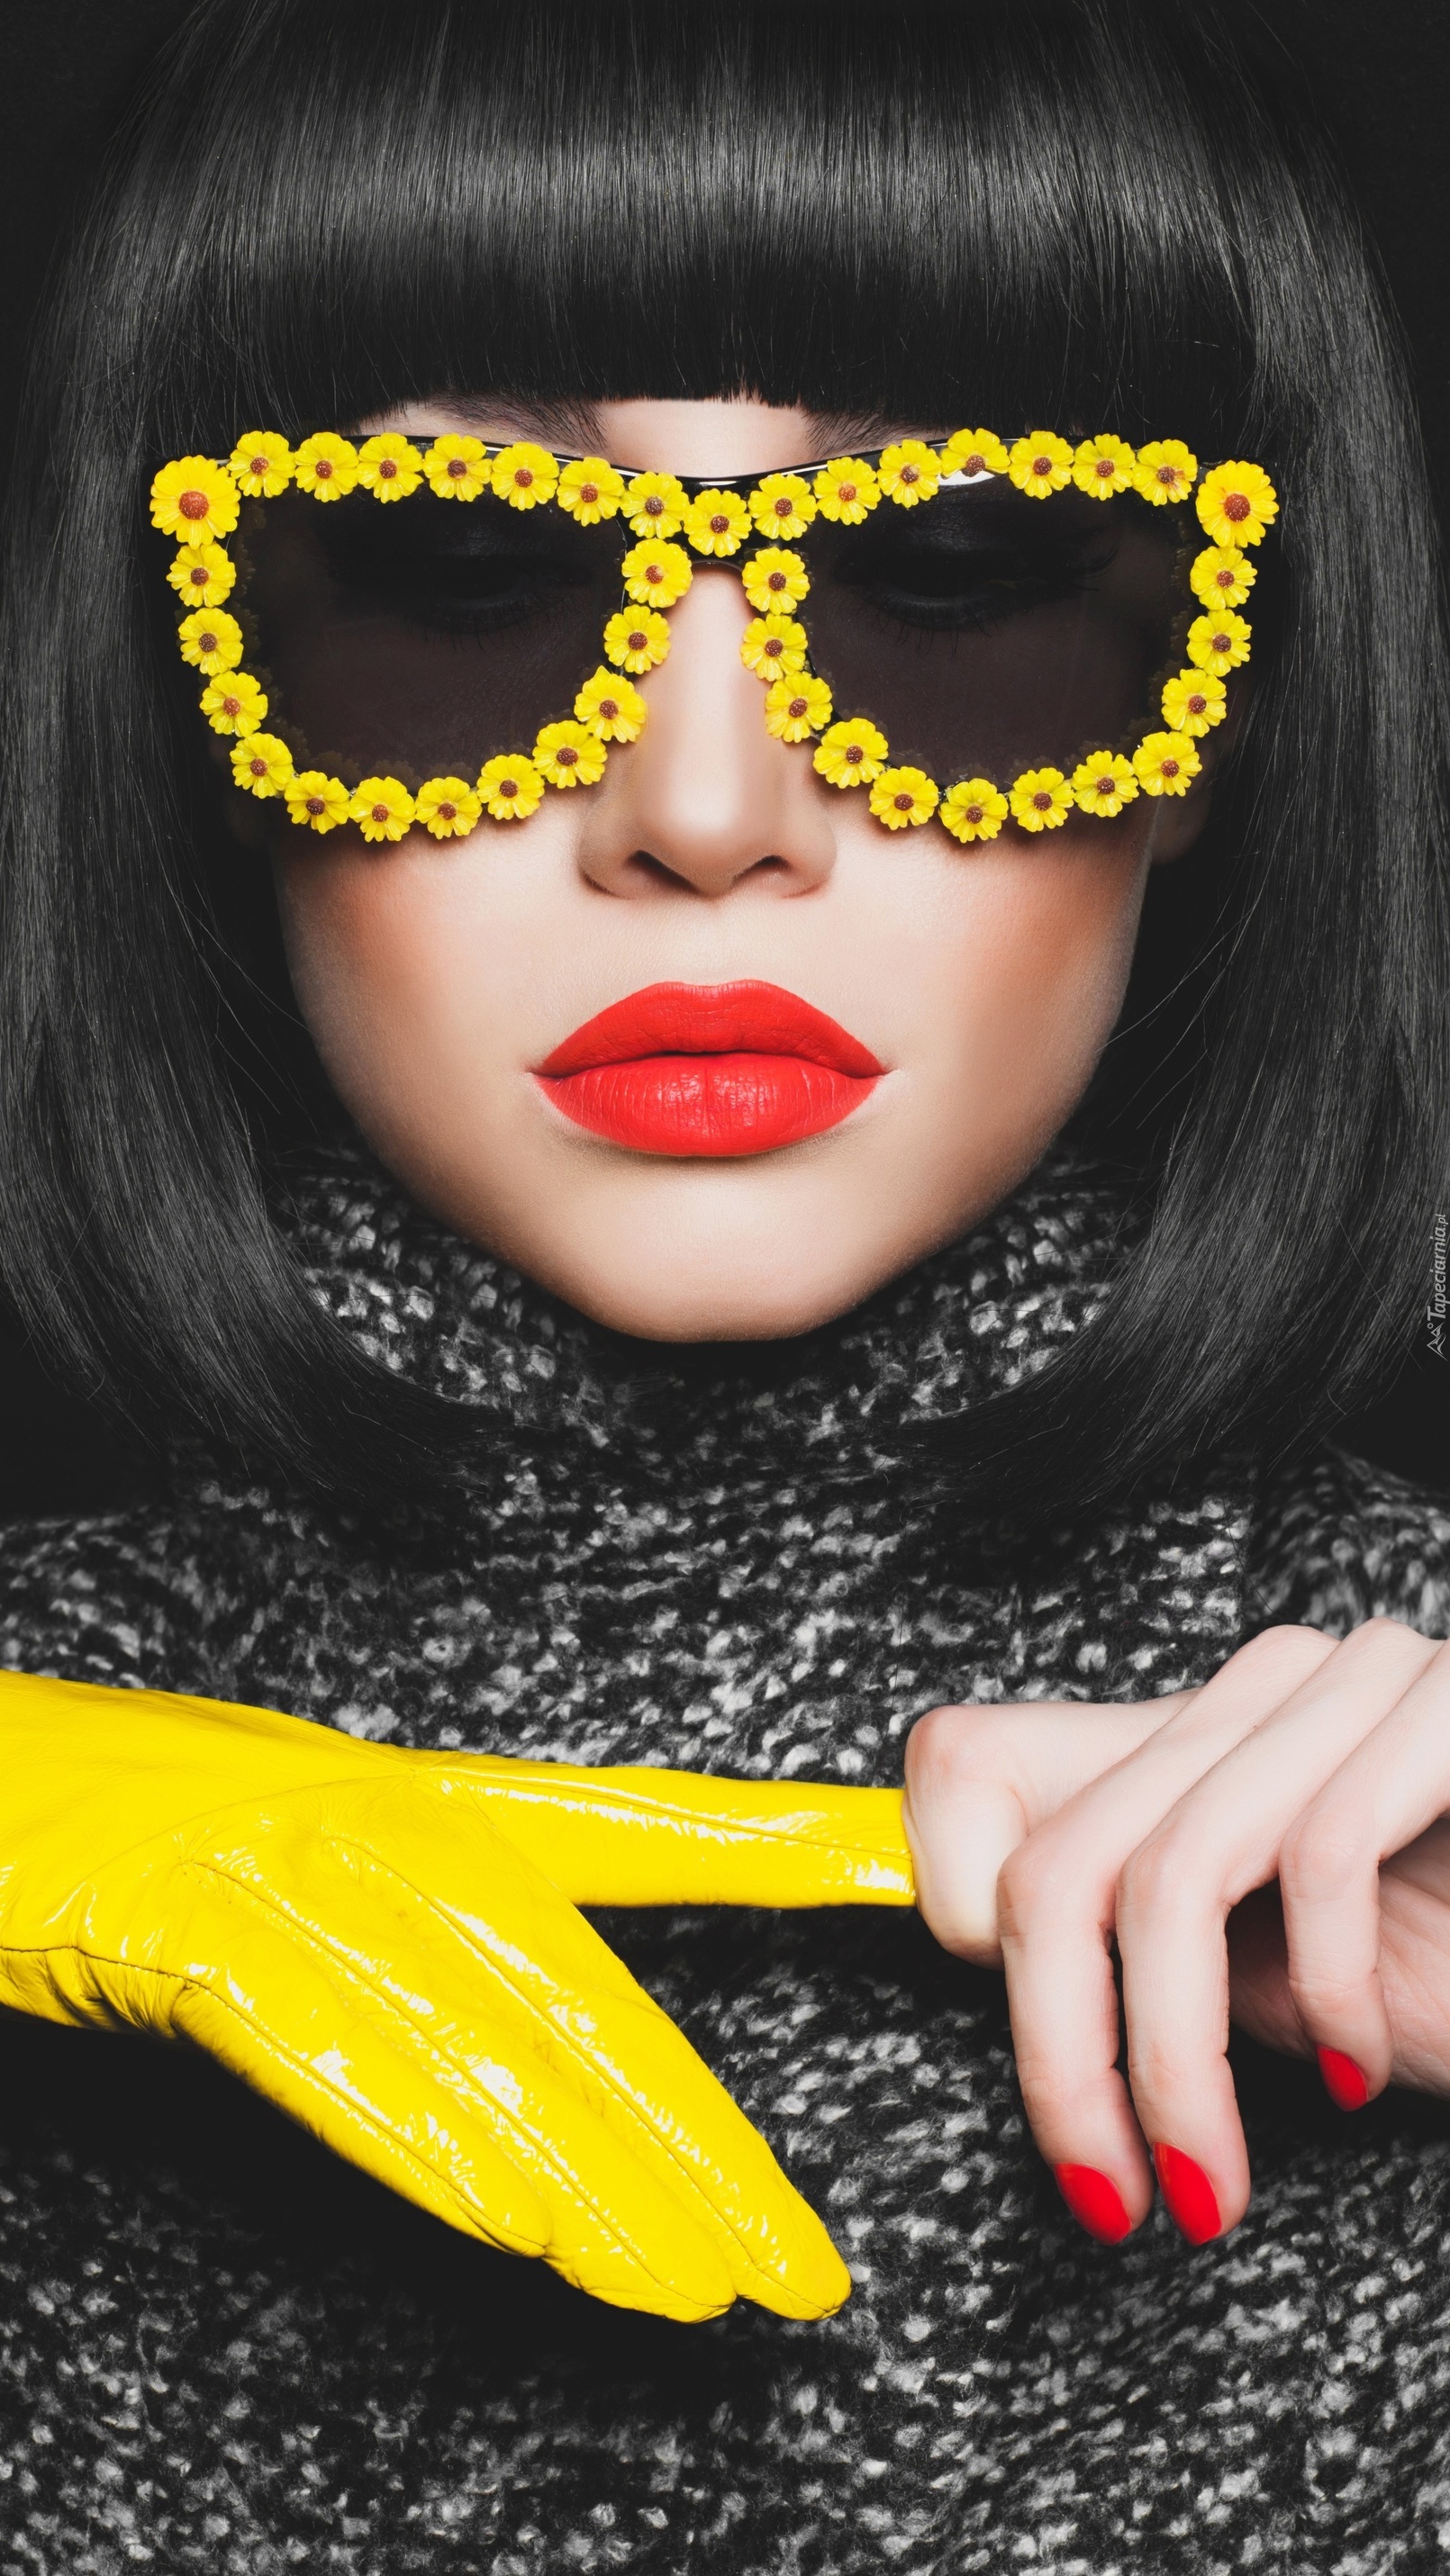 Kobieta w okularach z żółtymi oprawkami